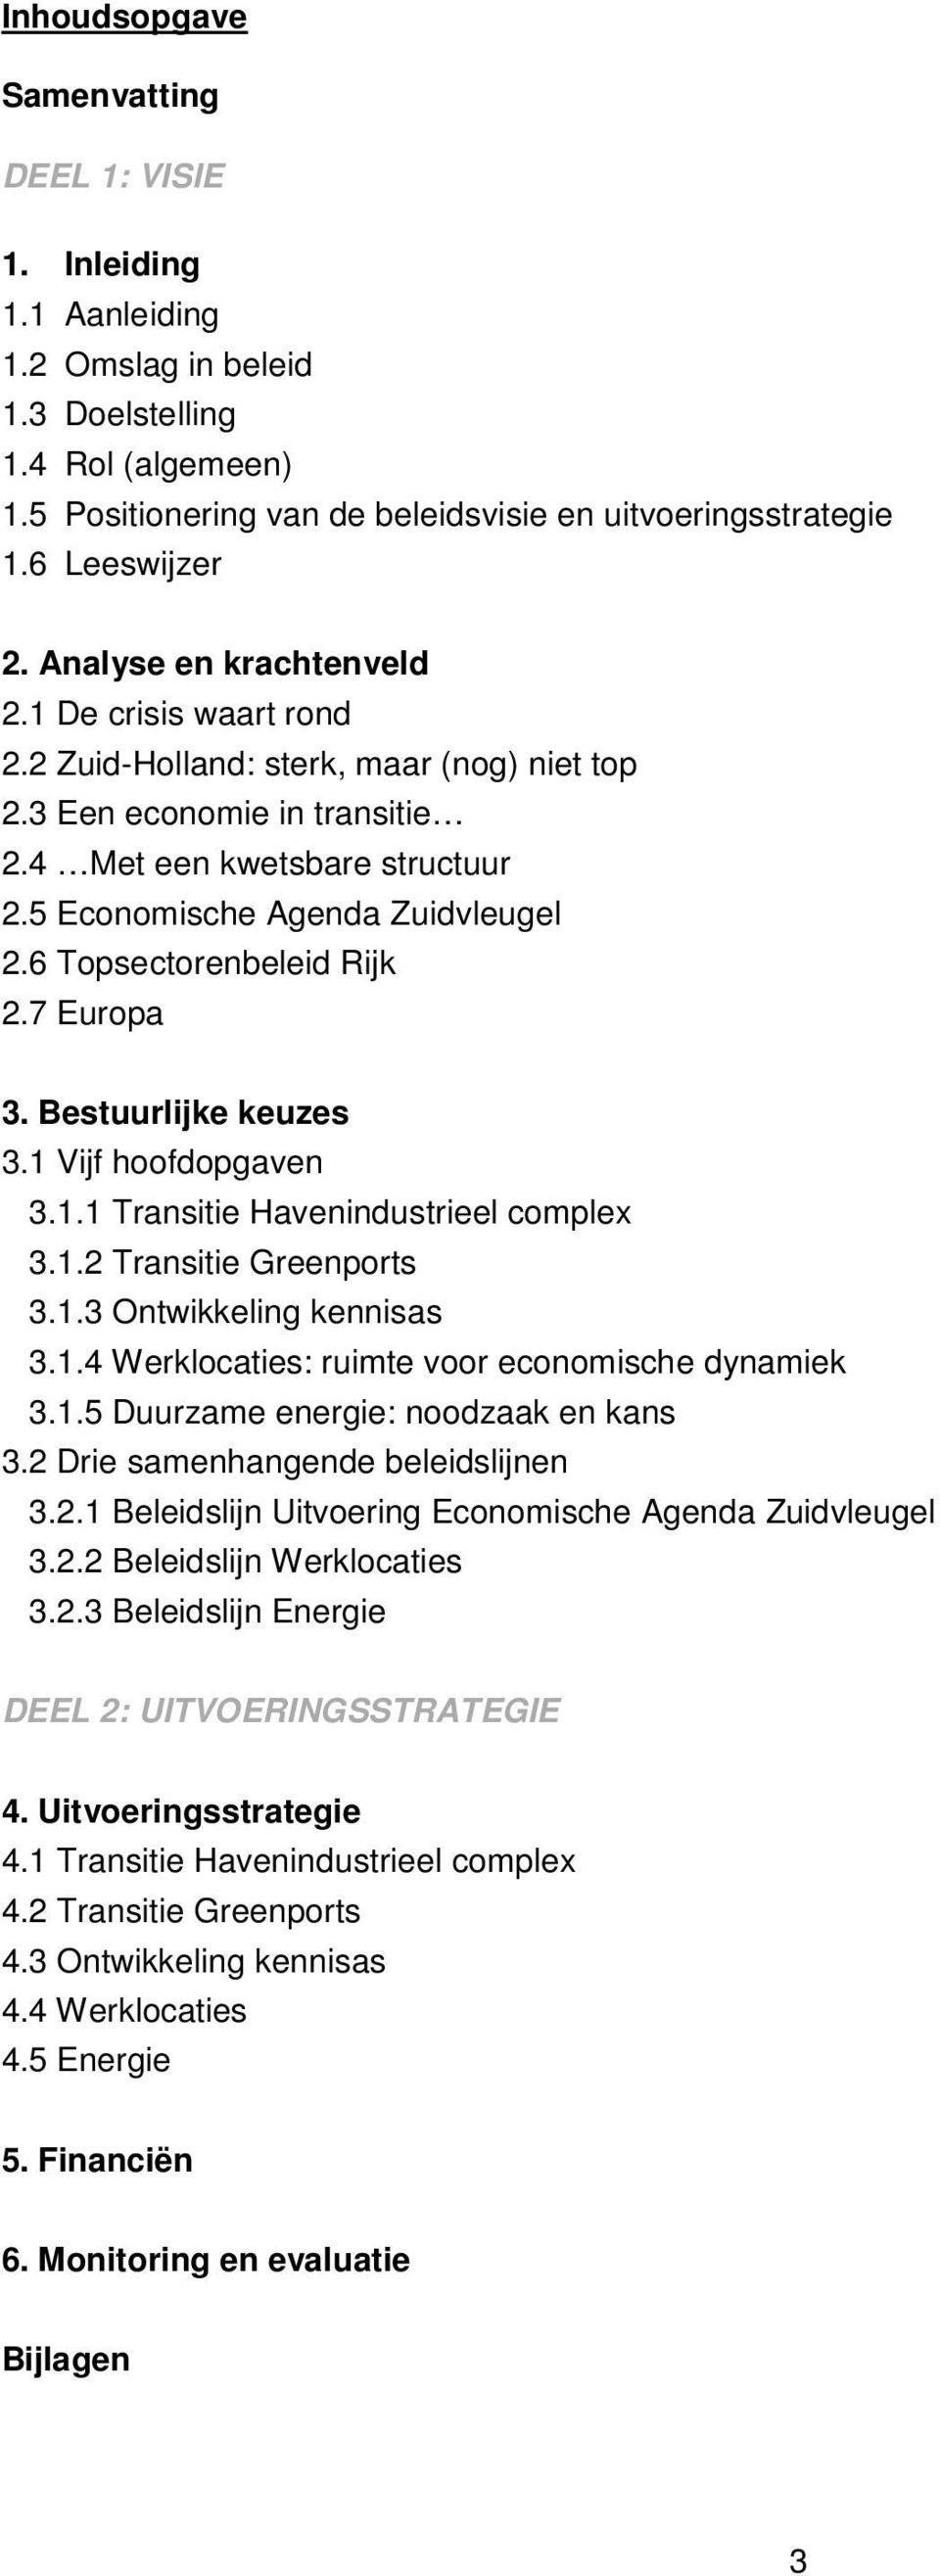 5 Economische Agenda Zuidvleugel 2.6 Topsectorenbeleid Rijk 2.7 Europa 3. Bestuurlijke keuzes 3.1 Vijf hoofdopgaven 3.1.1 Transitie Havenindustrieel complex 3.1.2 Transitie Greenports 3.1.3 Ontwikkeling kennisas 3.